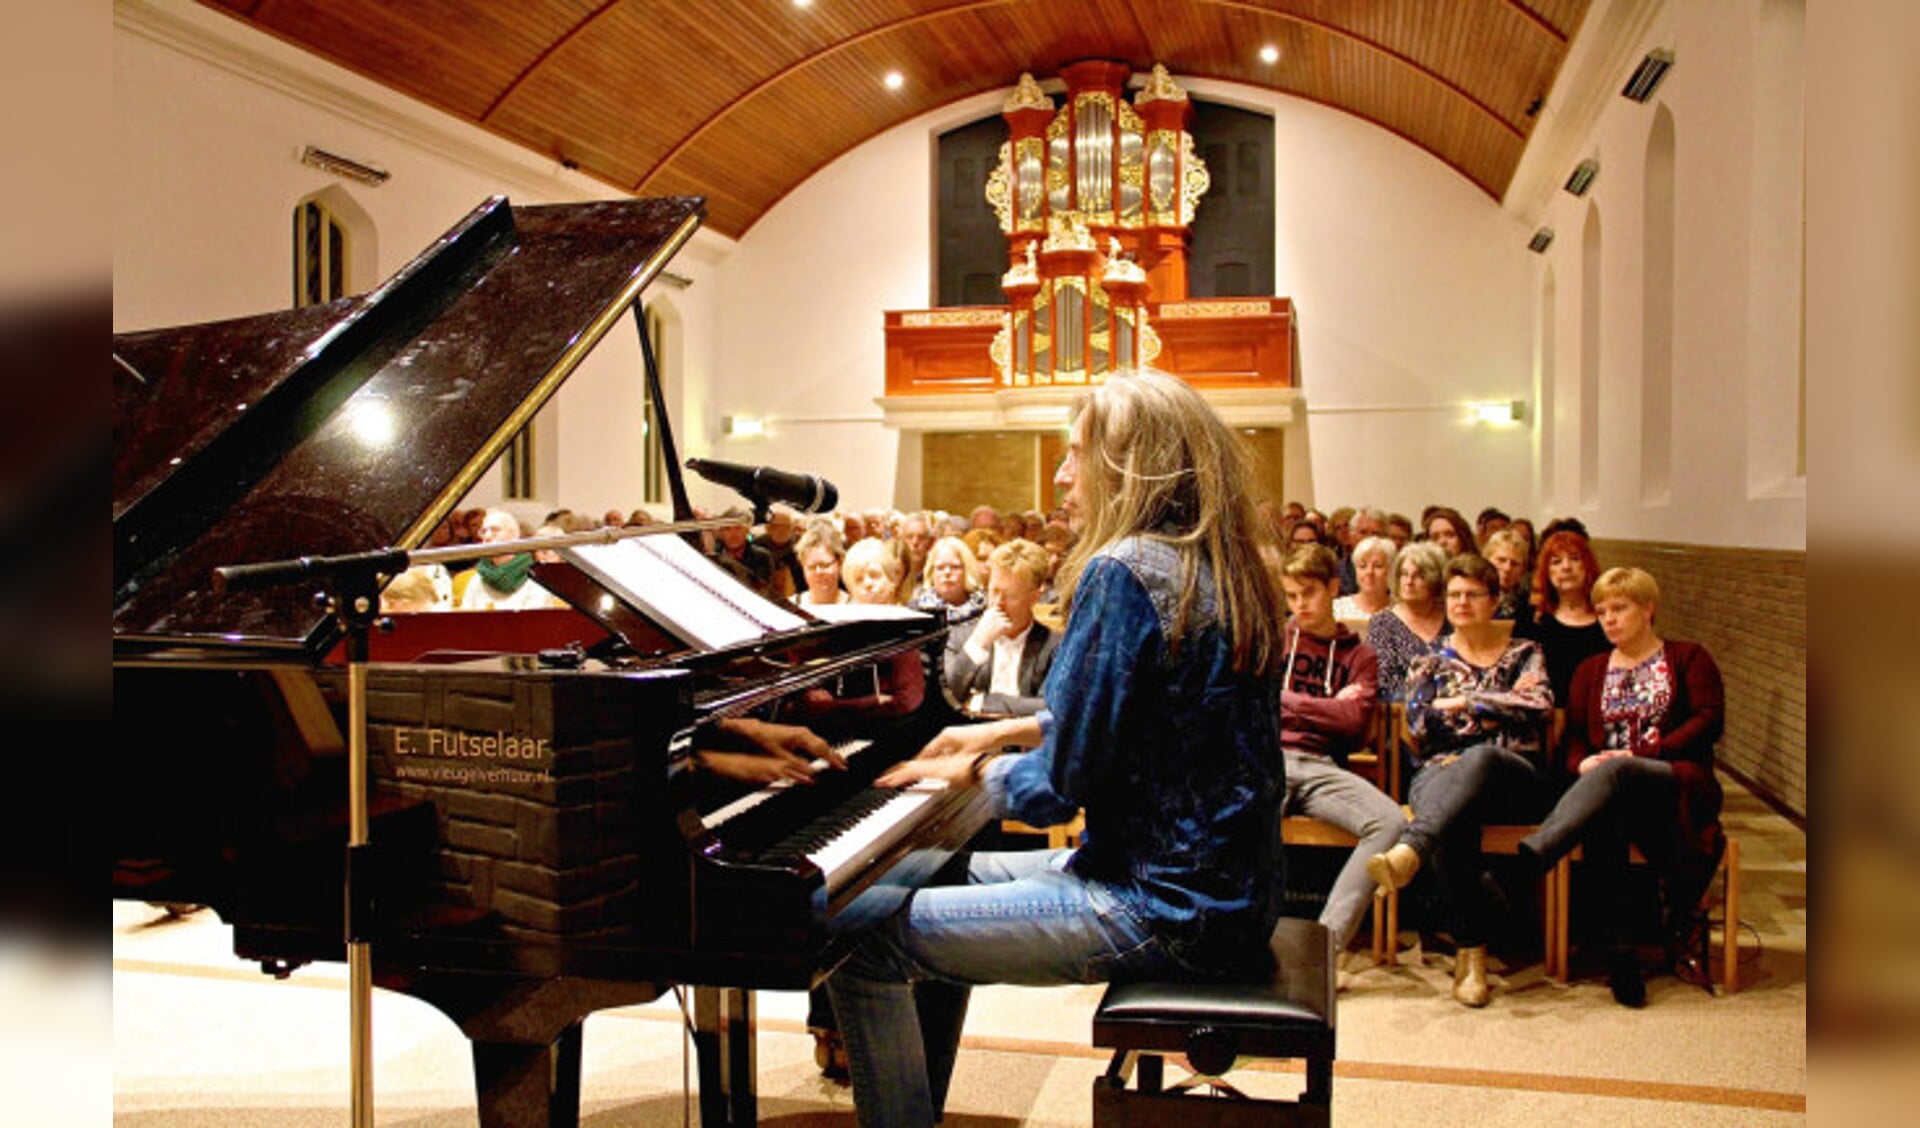  Jan Vayne vorig jaar tijdens een concert in de Hasselter Ichthuskerk.